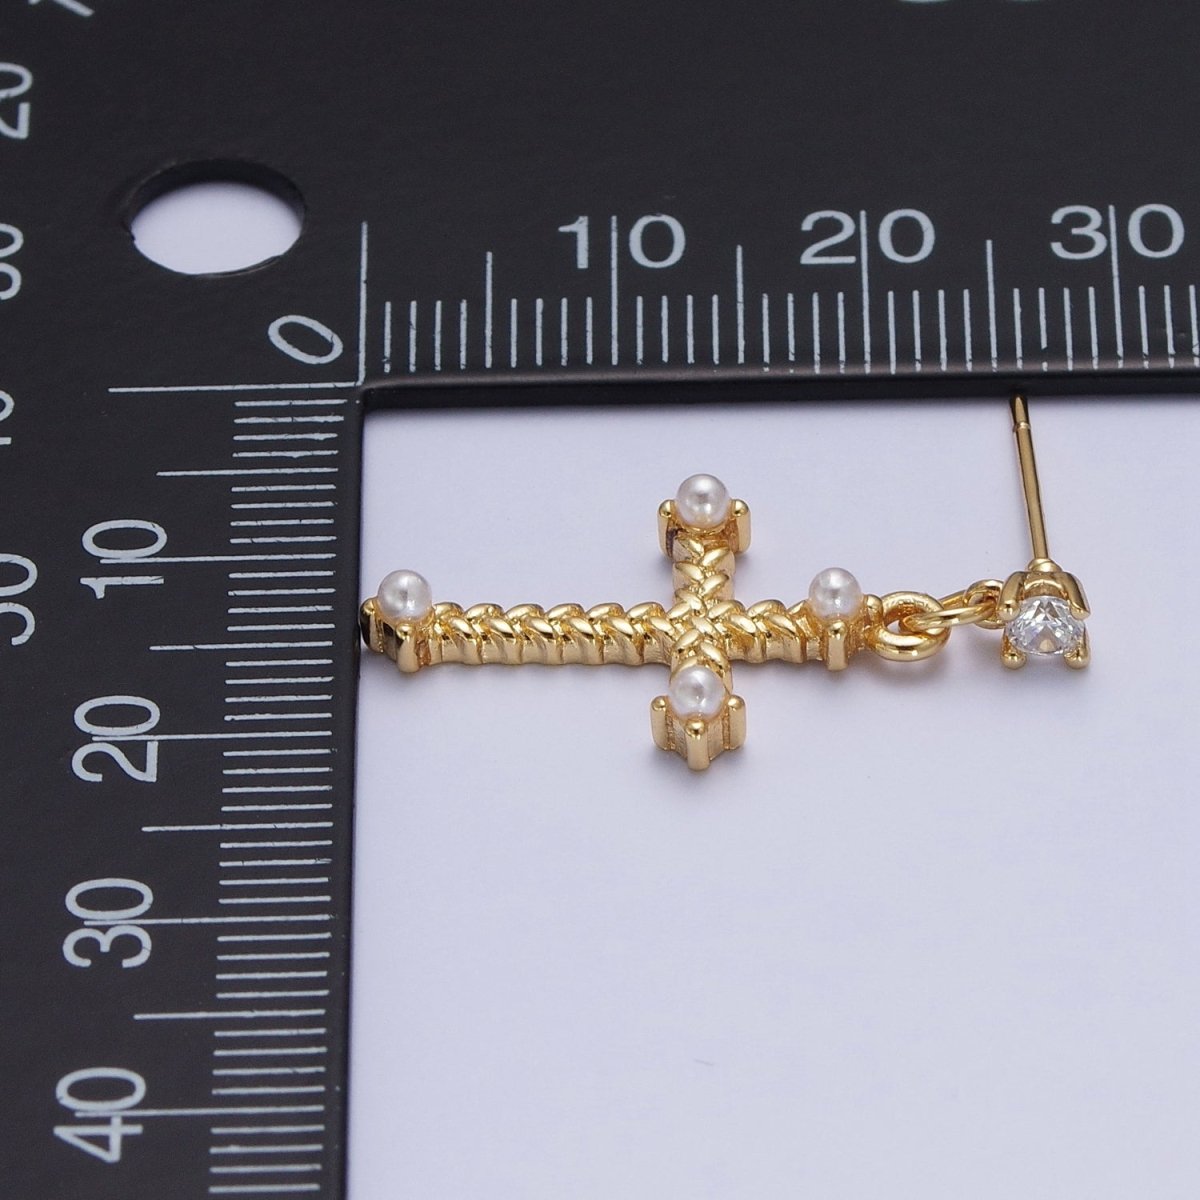 Gold Cross Stud Earring Dangle Cross Earring Charm for Religious Women Jewelry P-277 - DLUXCA